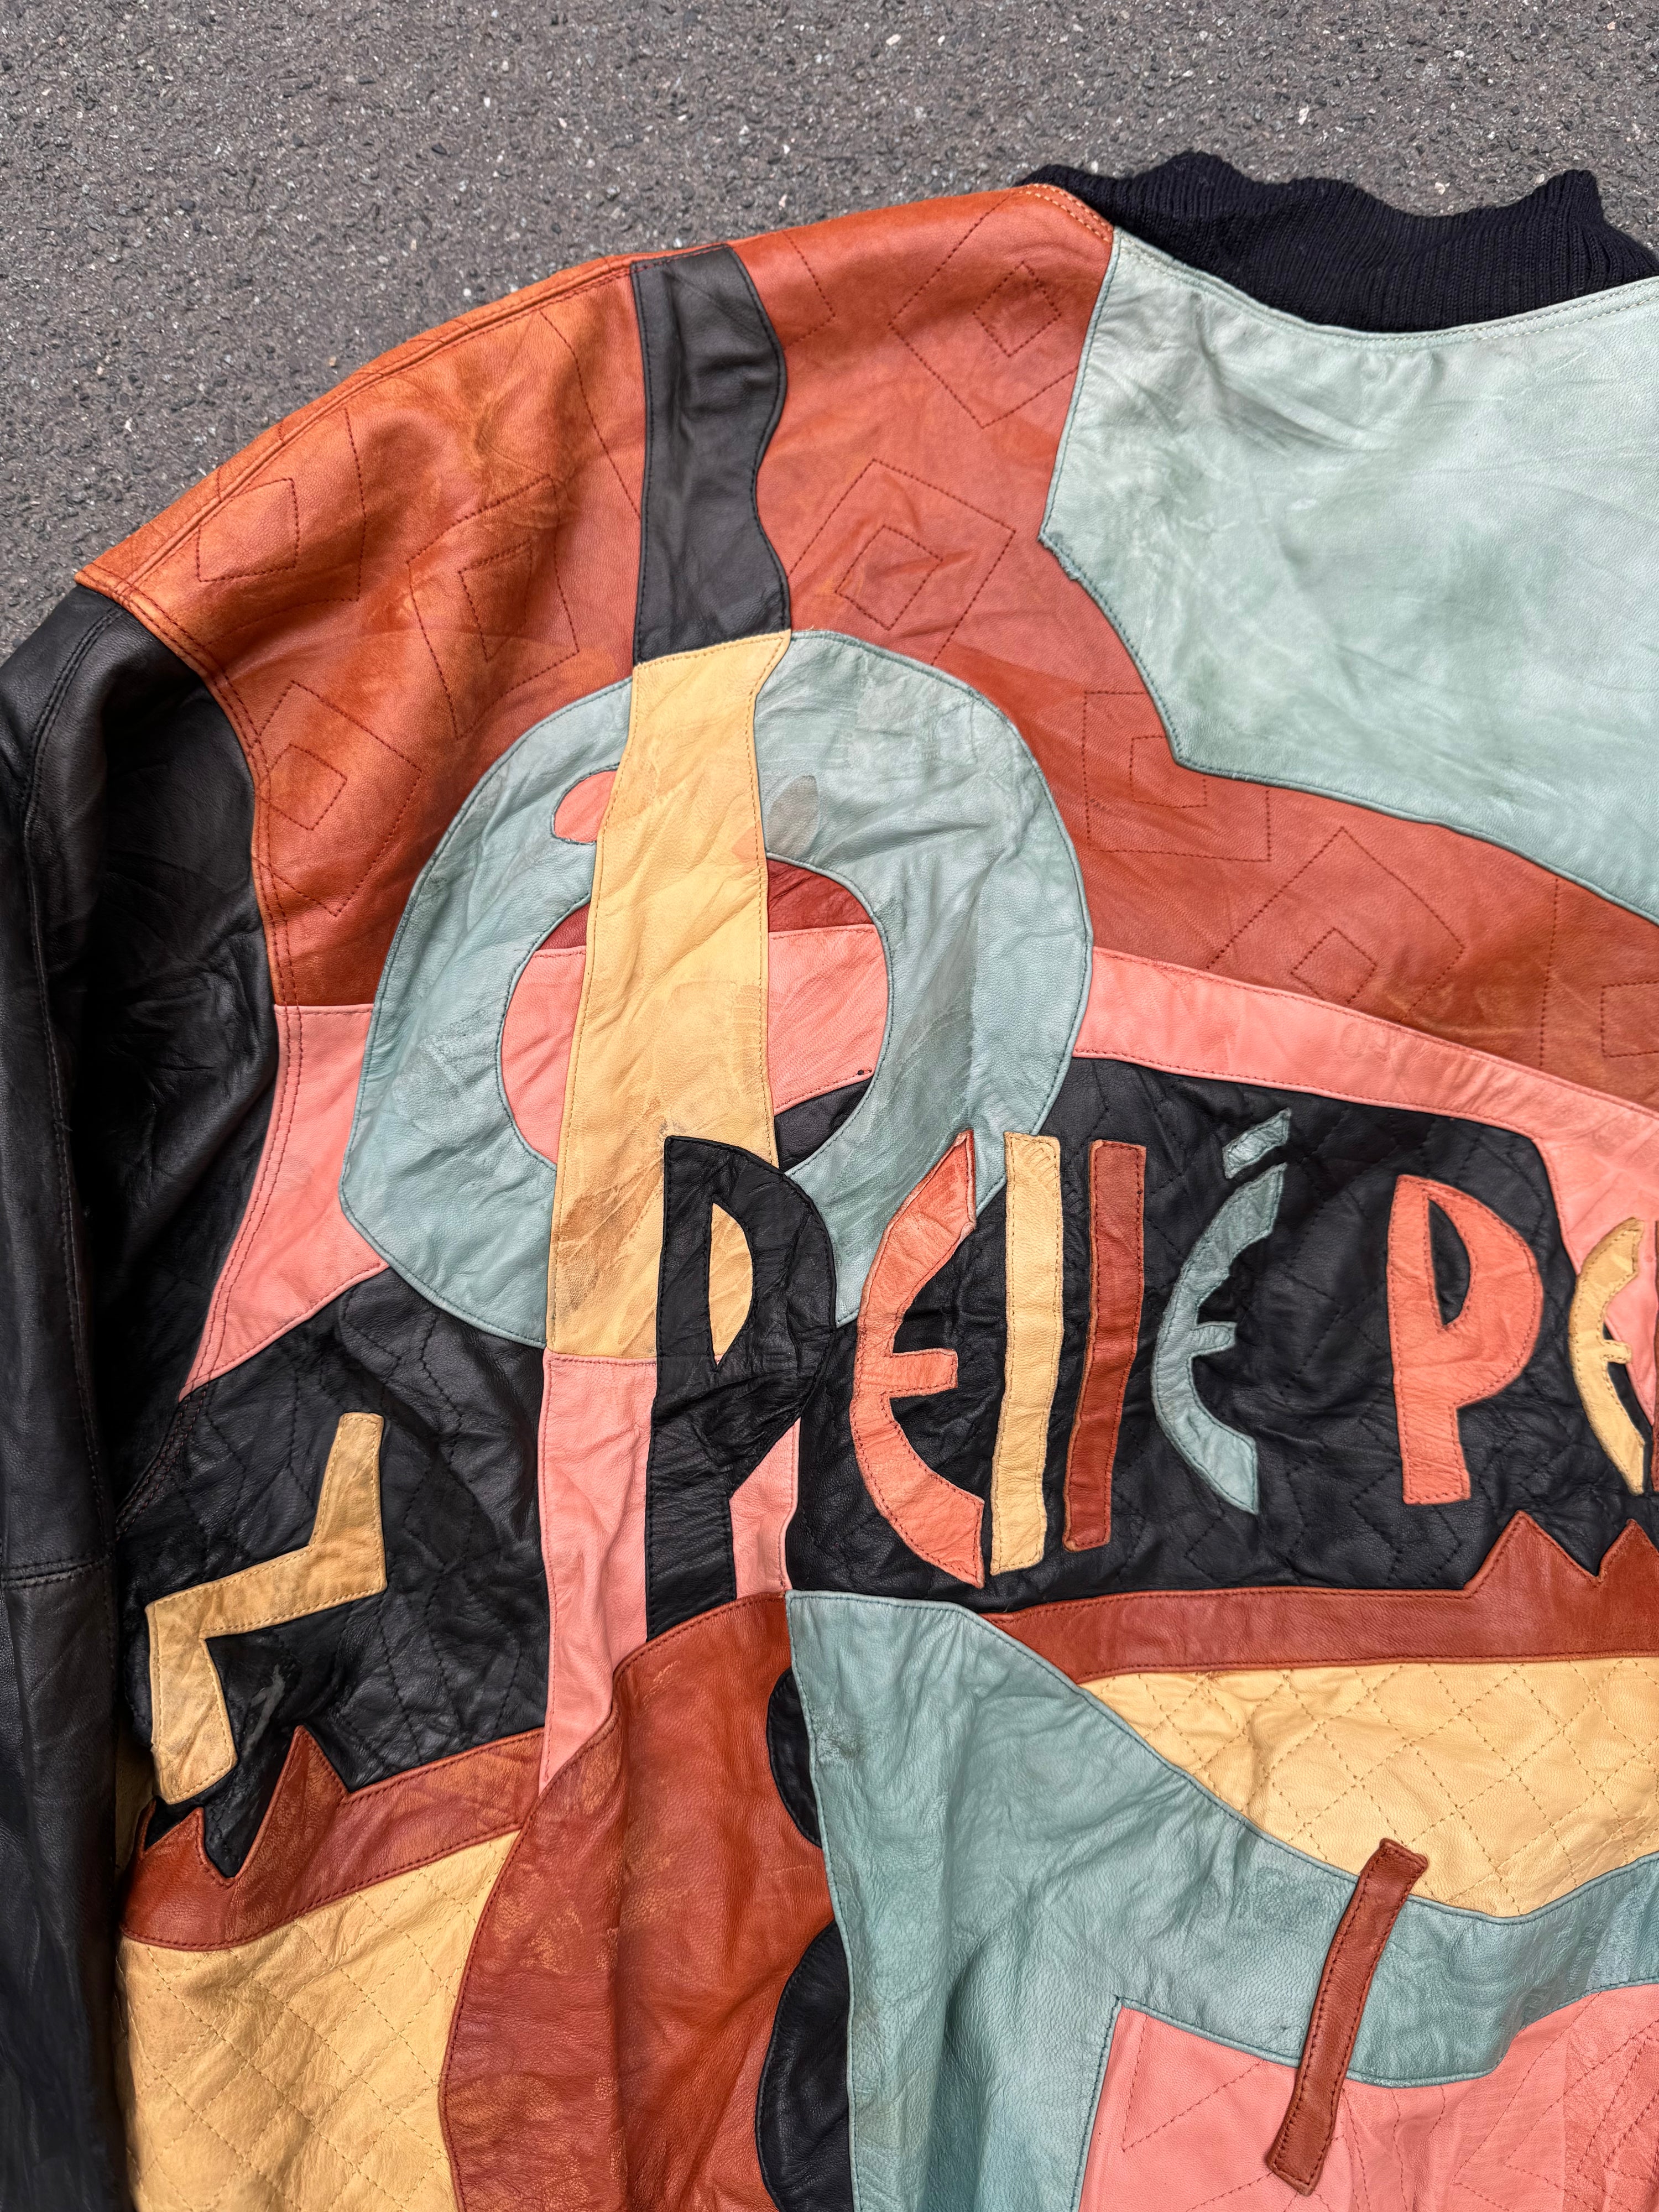 Vintage 90s Pelle Pelle "Picasso" Leather Jacket (M/L)